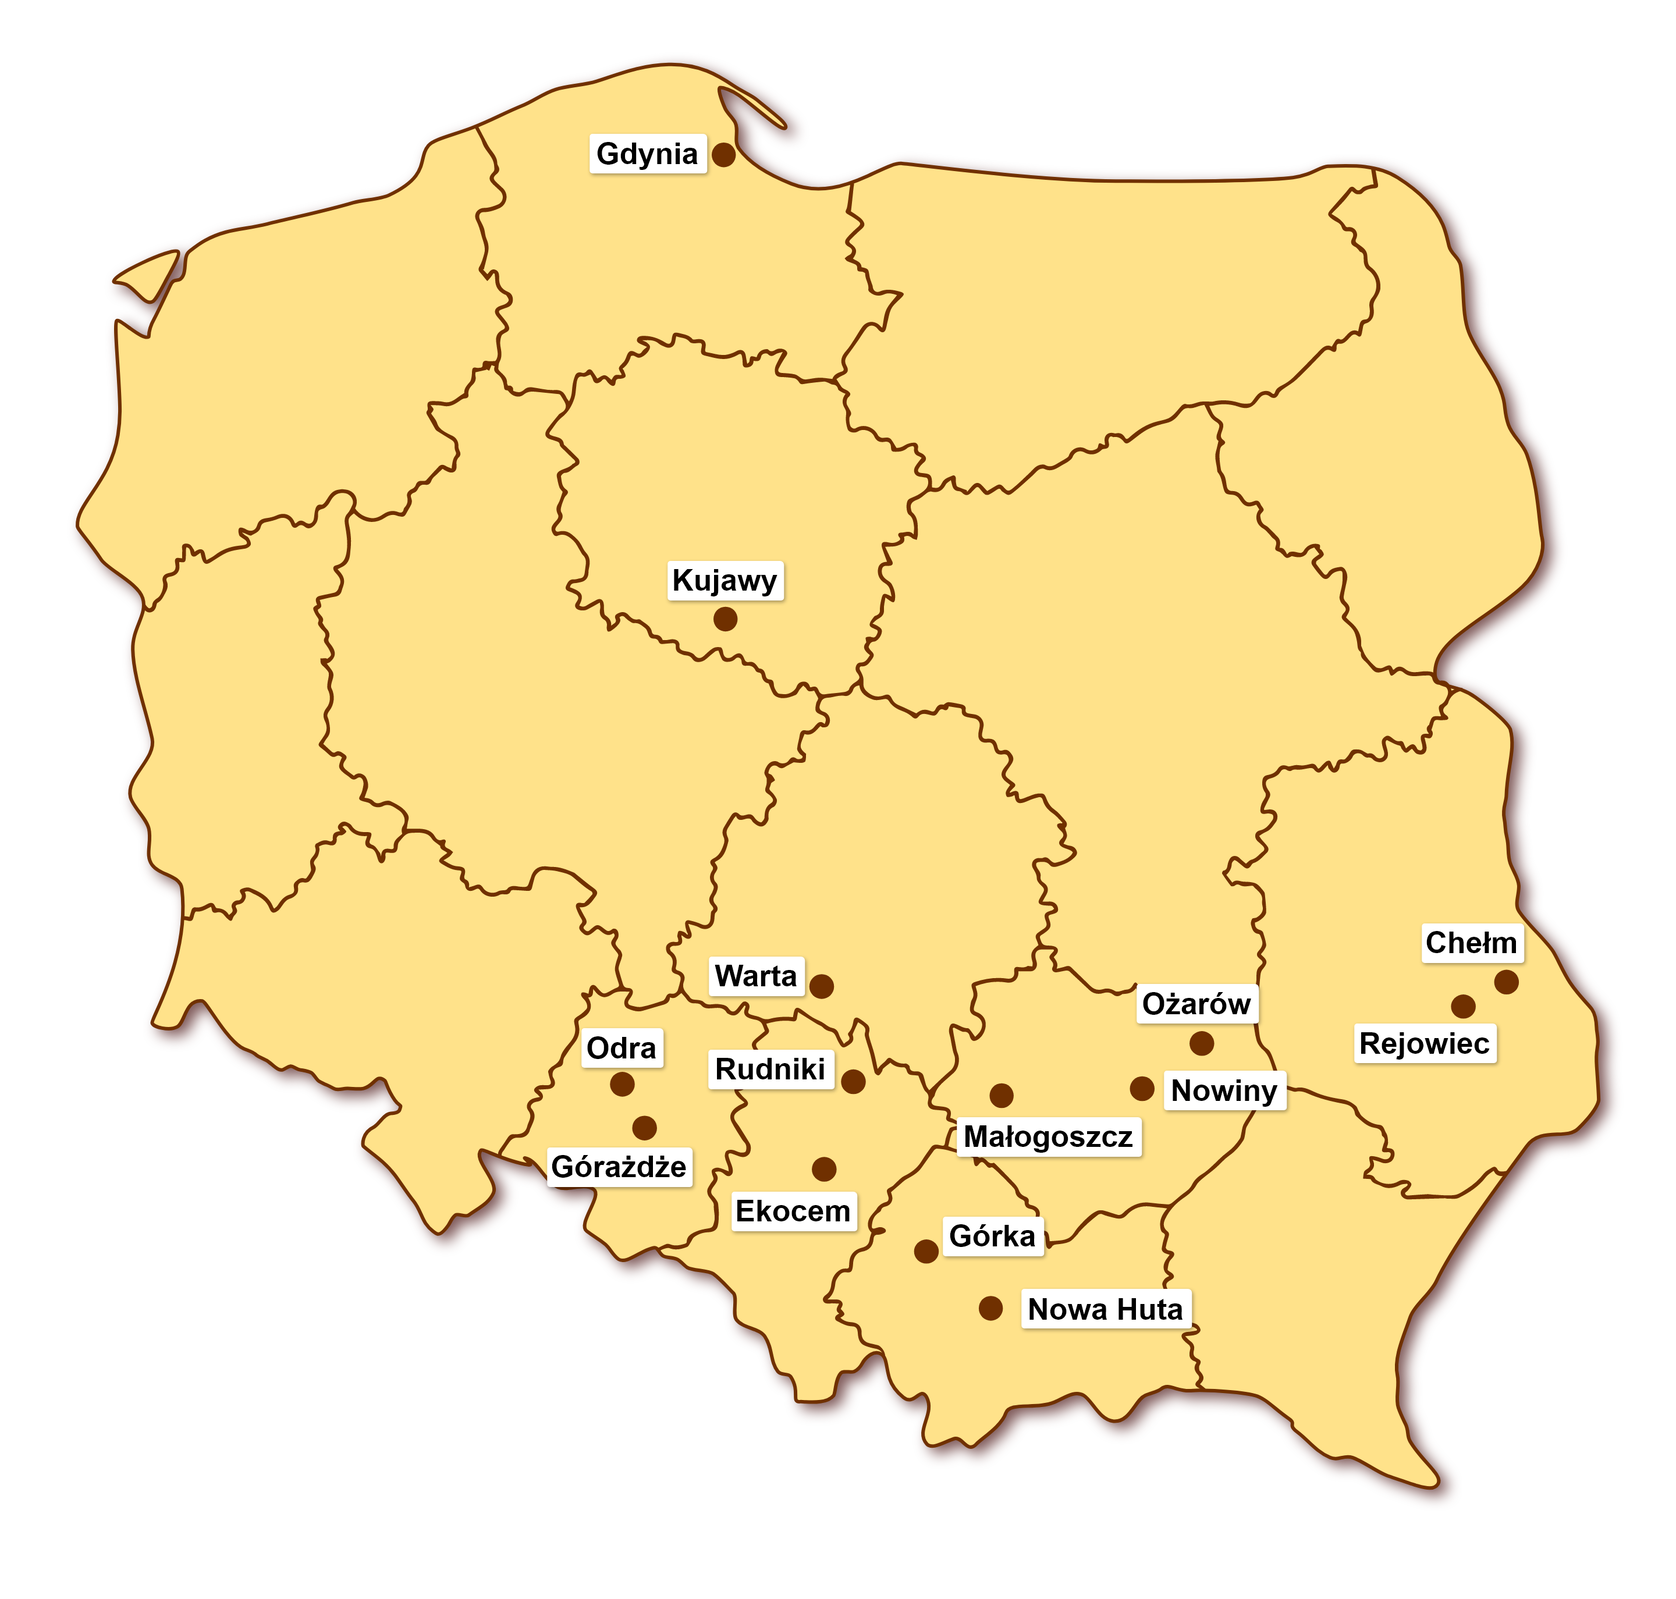 Mapa Polski wraz z zaznaczonymi cementowniami w Polsce, które znajduję się w Gdyni, Kujawach, Warcie, Odrze, Górażdże, Rudniku, Ekocem, Górce, Nowej Hucie, Małogoszczu, Ożarowie, Nowinach, Chełmie oraz Rejowcu.